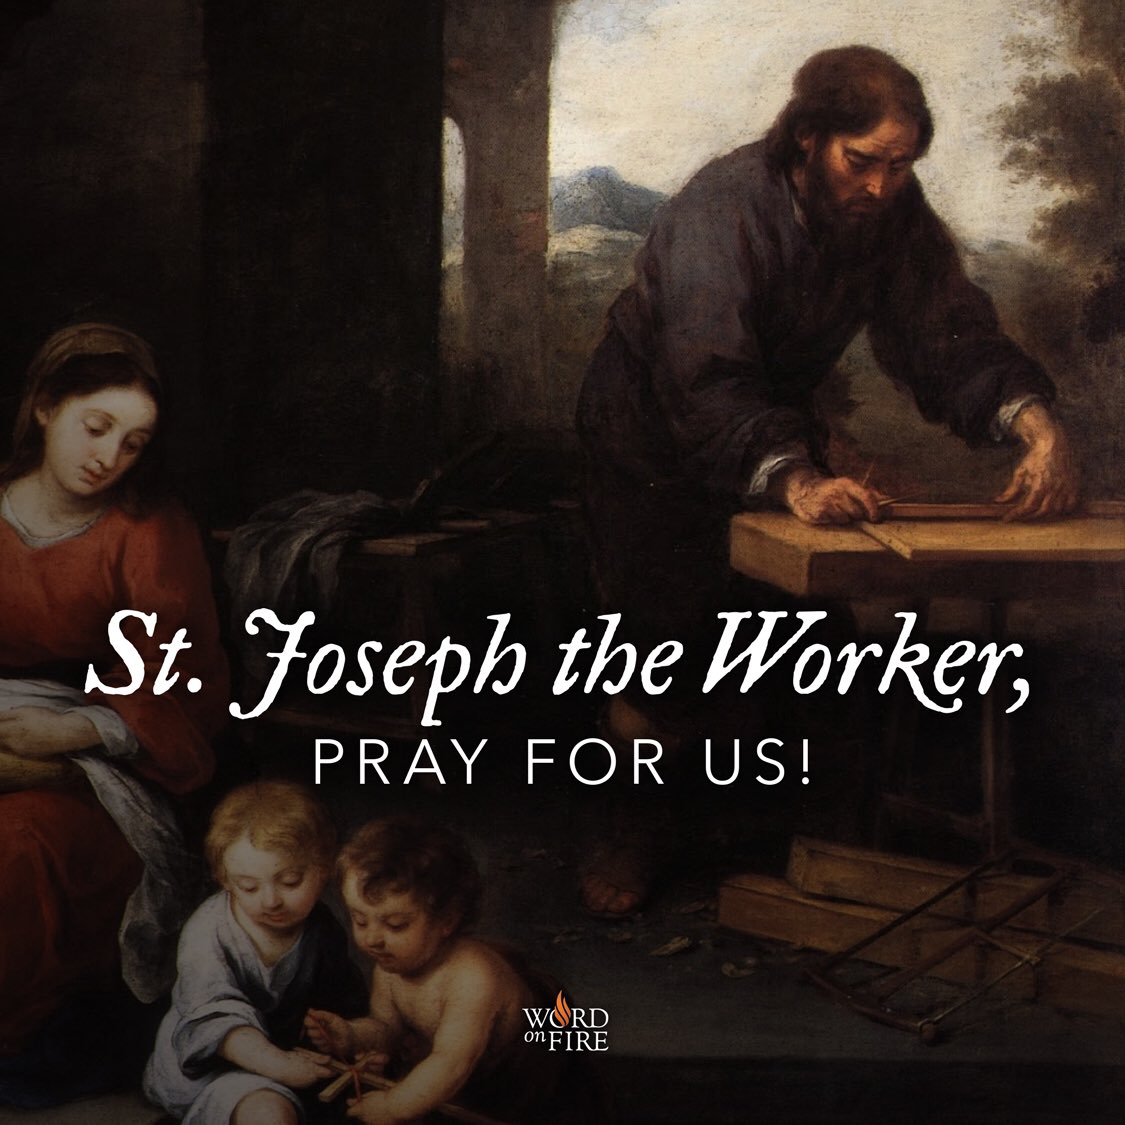 St. Joseph the Worker, pray for us! 
#SaintoftheDay #WordonFire #StJoseph #StJosephtheWorker